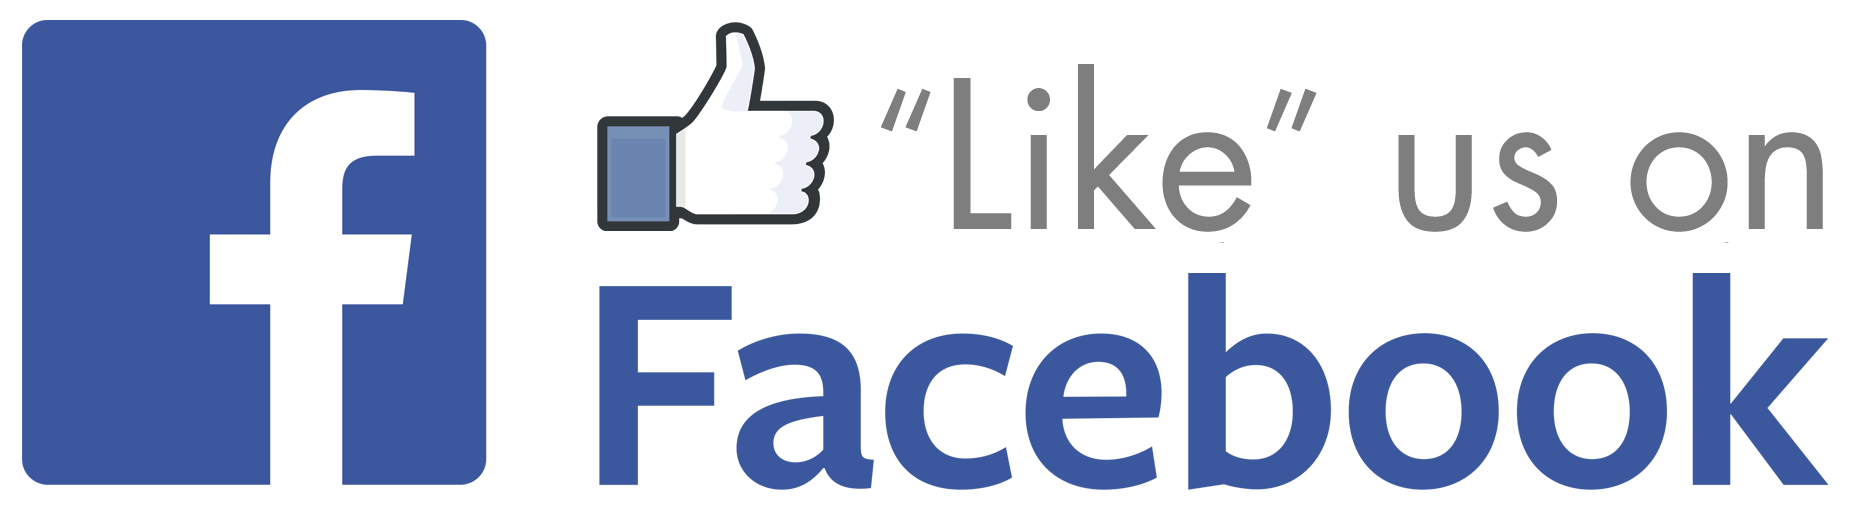 Like Us On Facebook Logo - Like Facebookg Logo Png Images